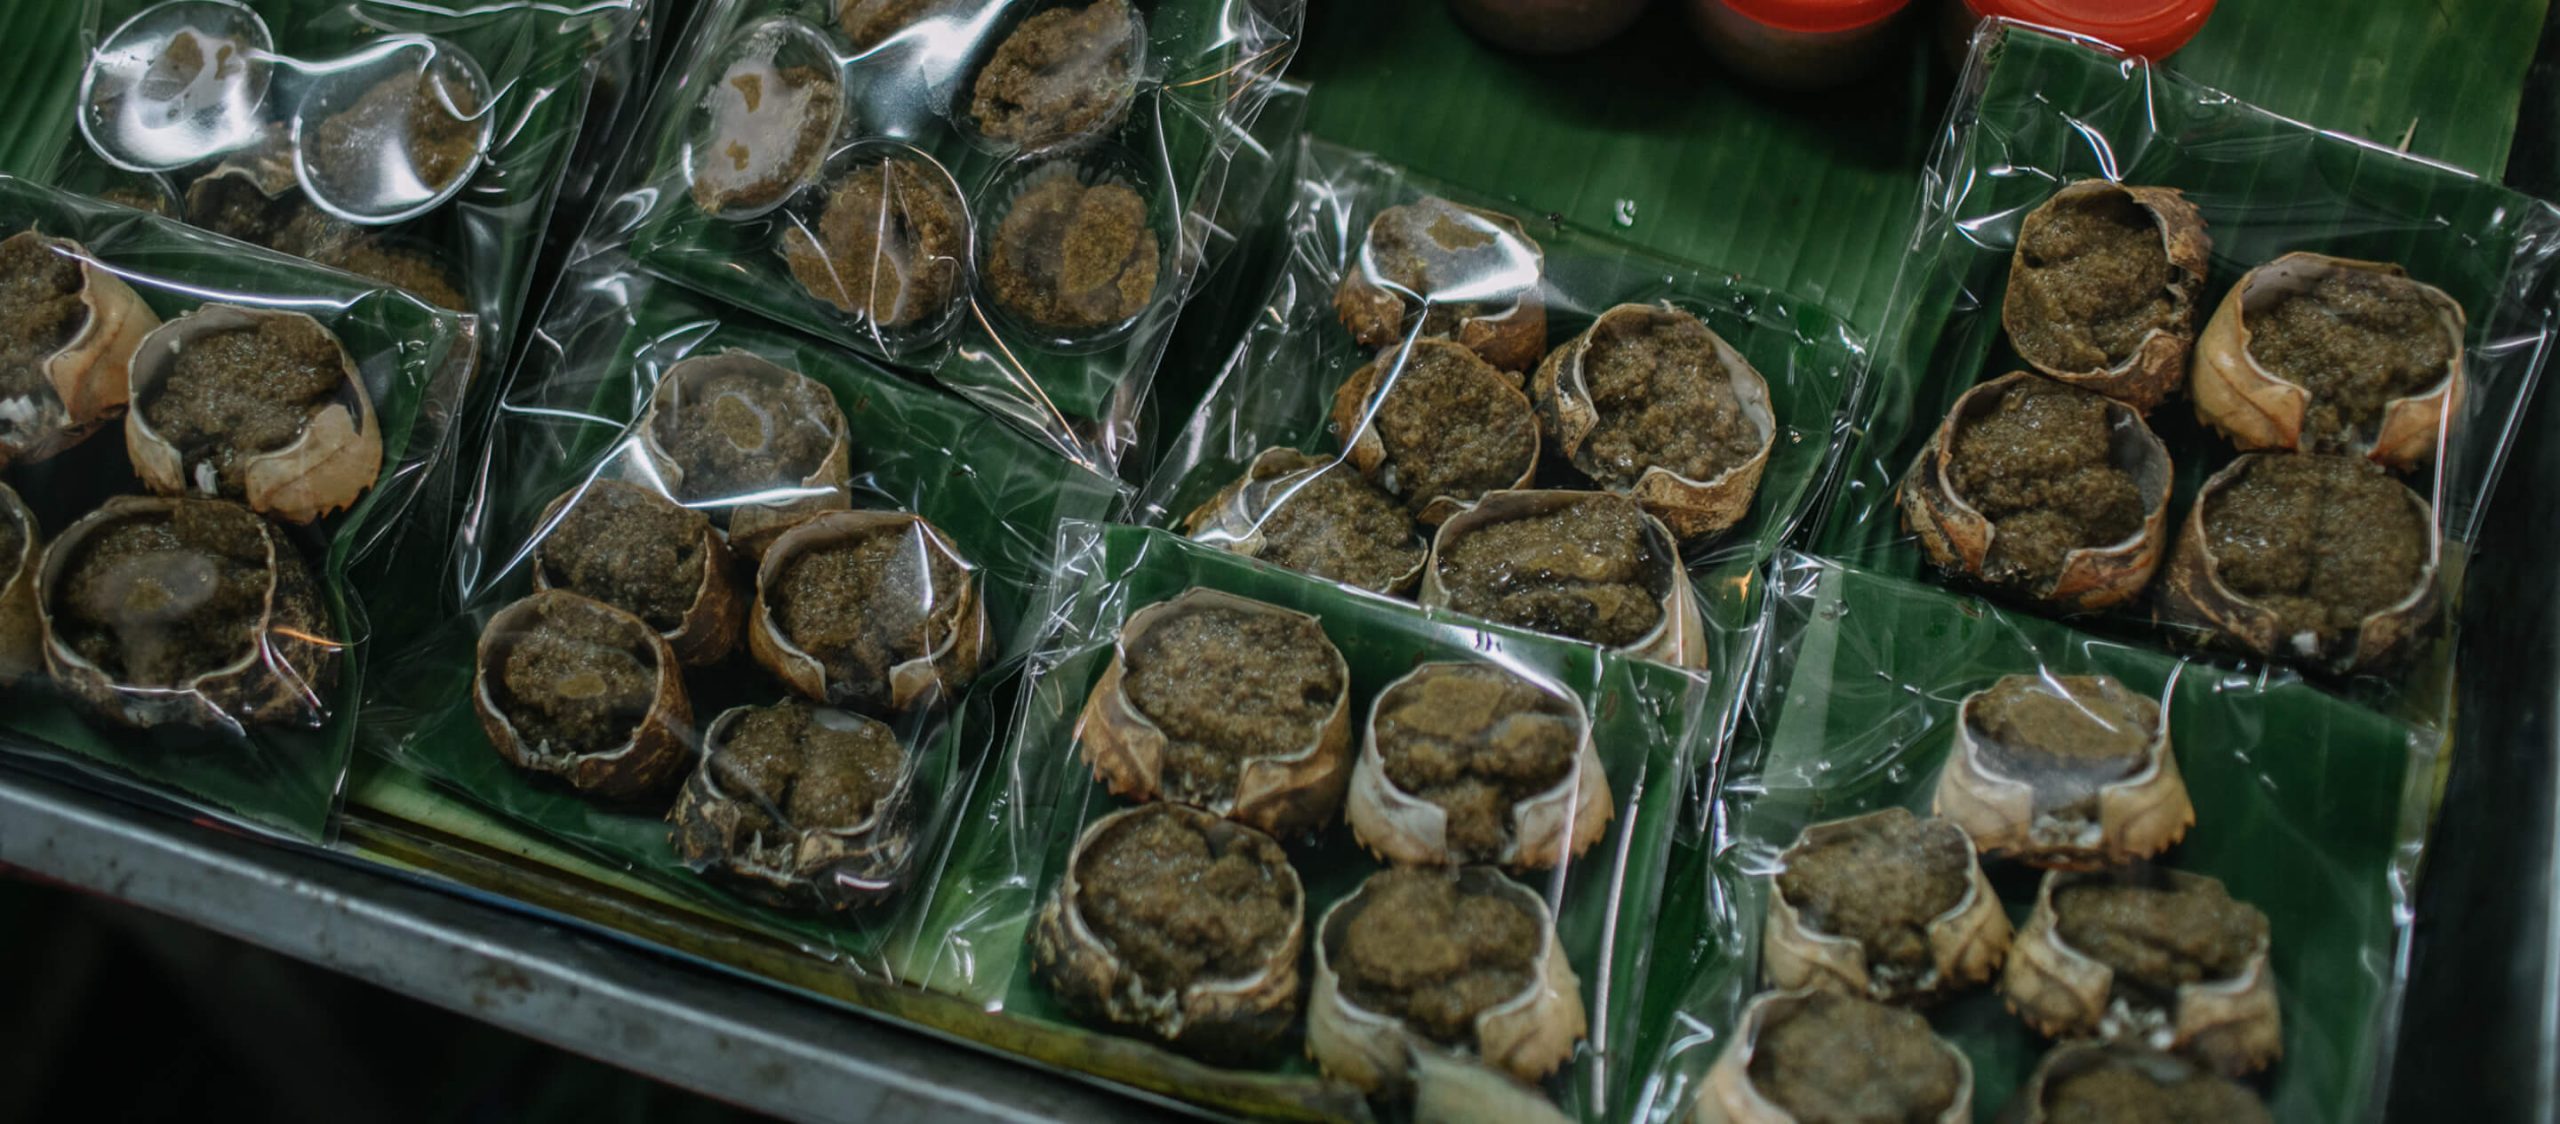 กาดแม่ทา ลำพูน : ตลาดรวมอาหารแปลกตาที่สะท้อนคุณค่าของป่าชุมชน